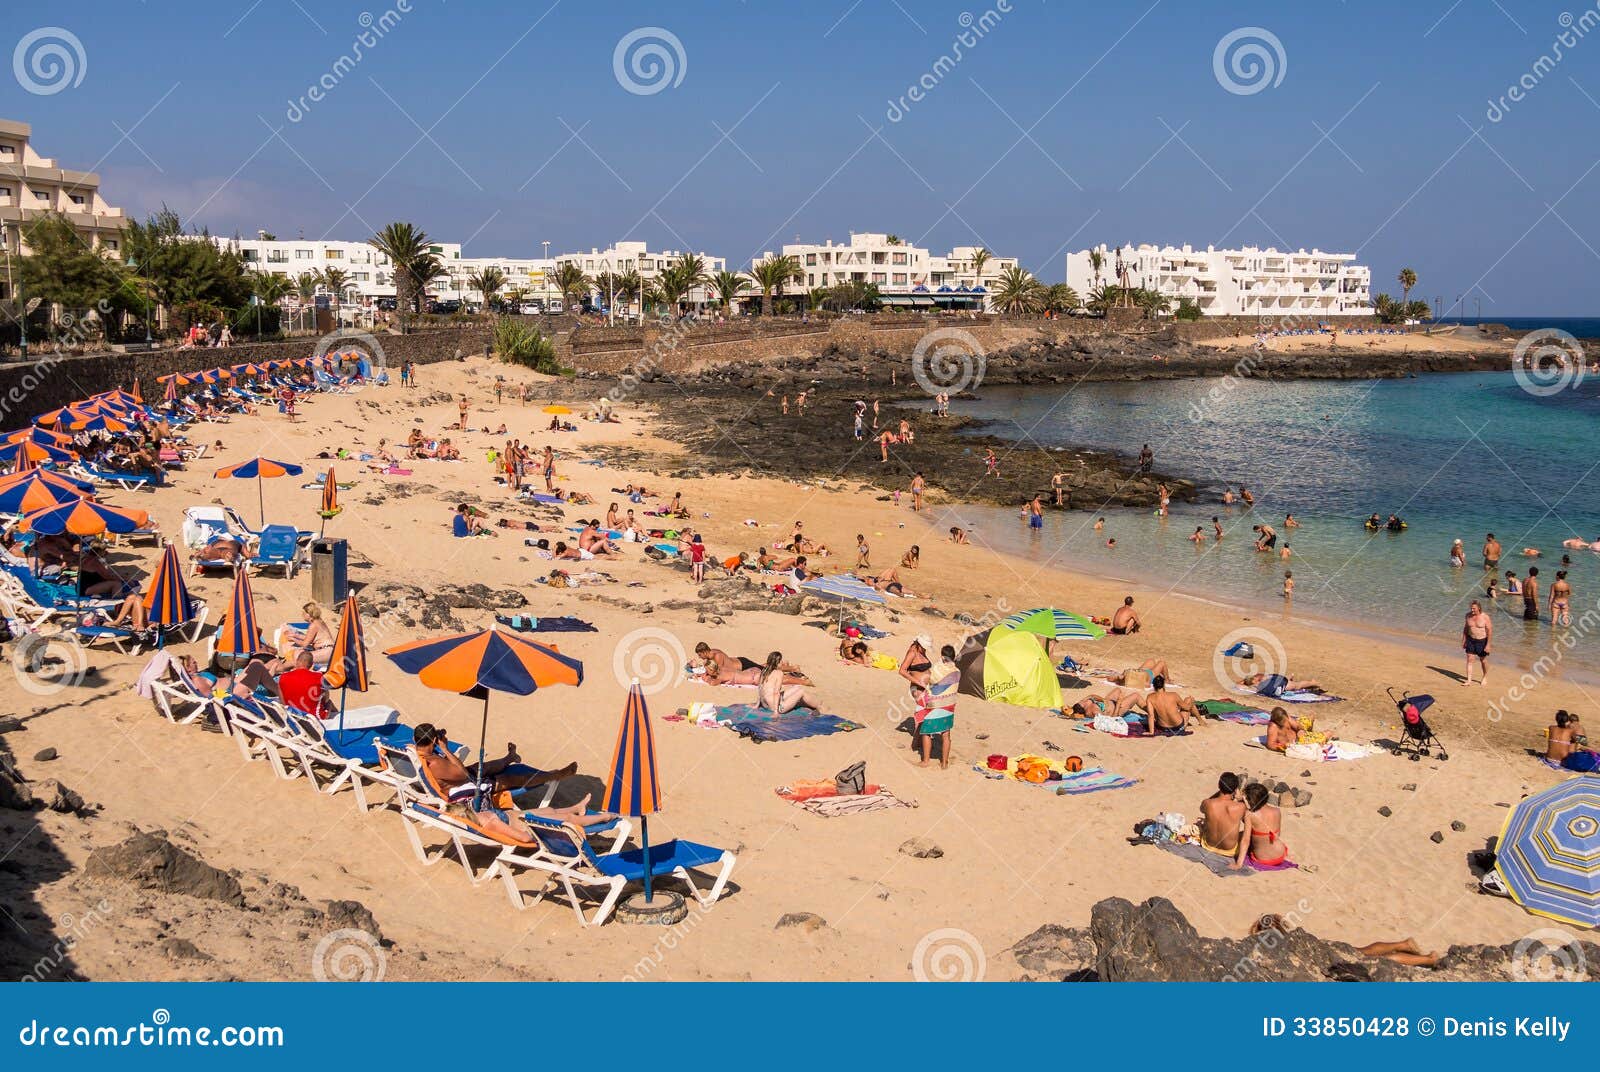 195,684 Canary Islands Stock Photos